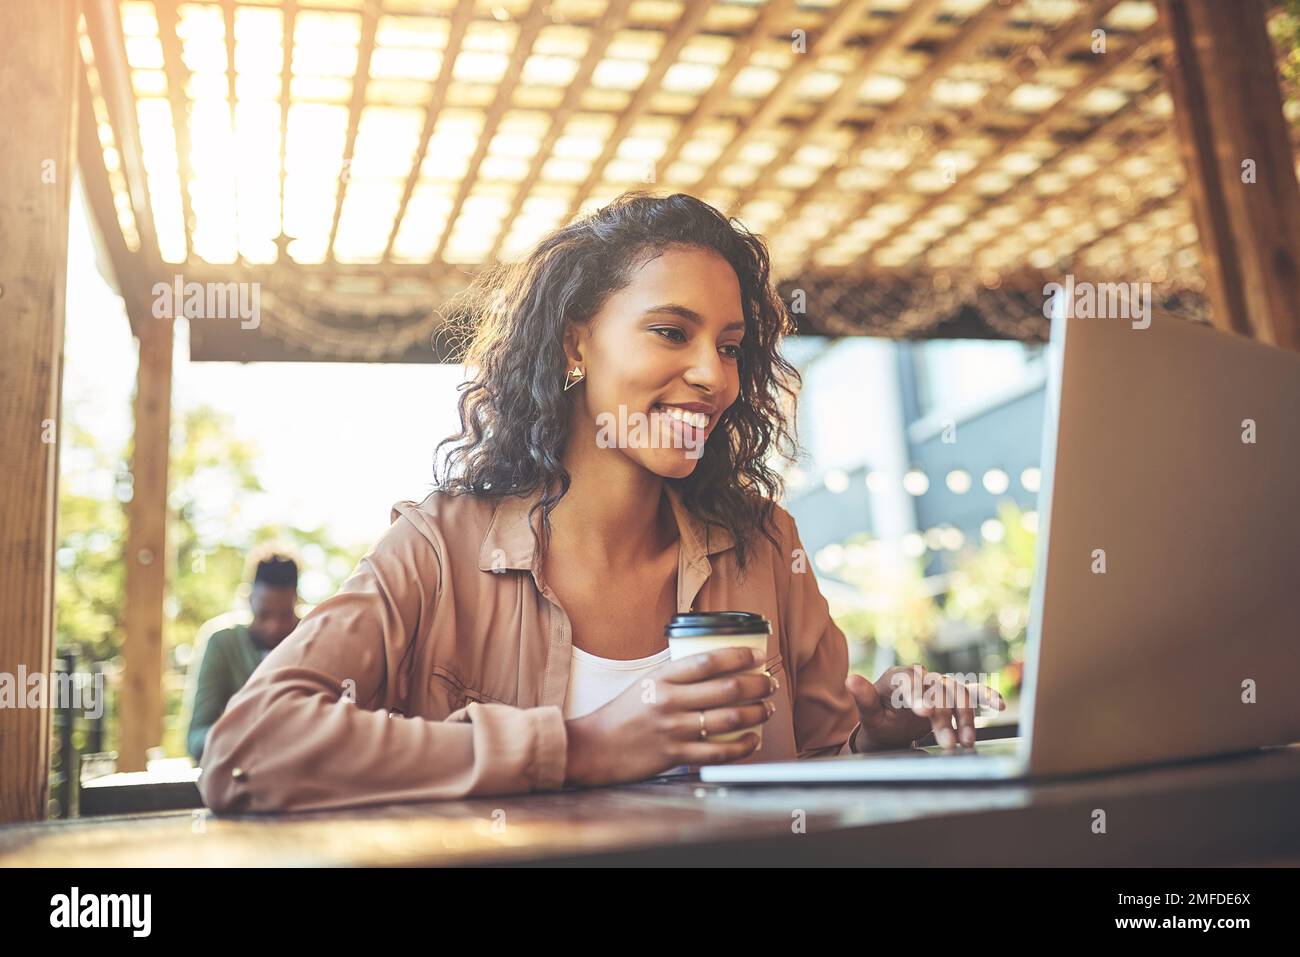 Questo caffè è sicuramente ottenere un posto sul mio blog. una giovane donna che usa un computer portatile in una caffetteria. Foto Stock